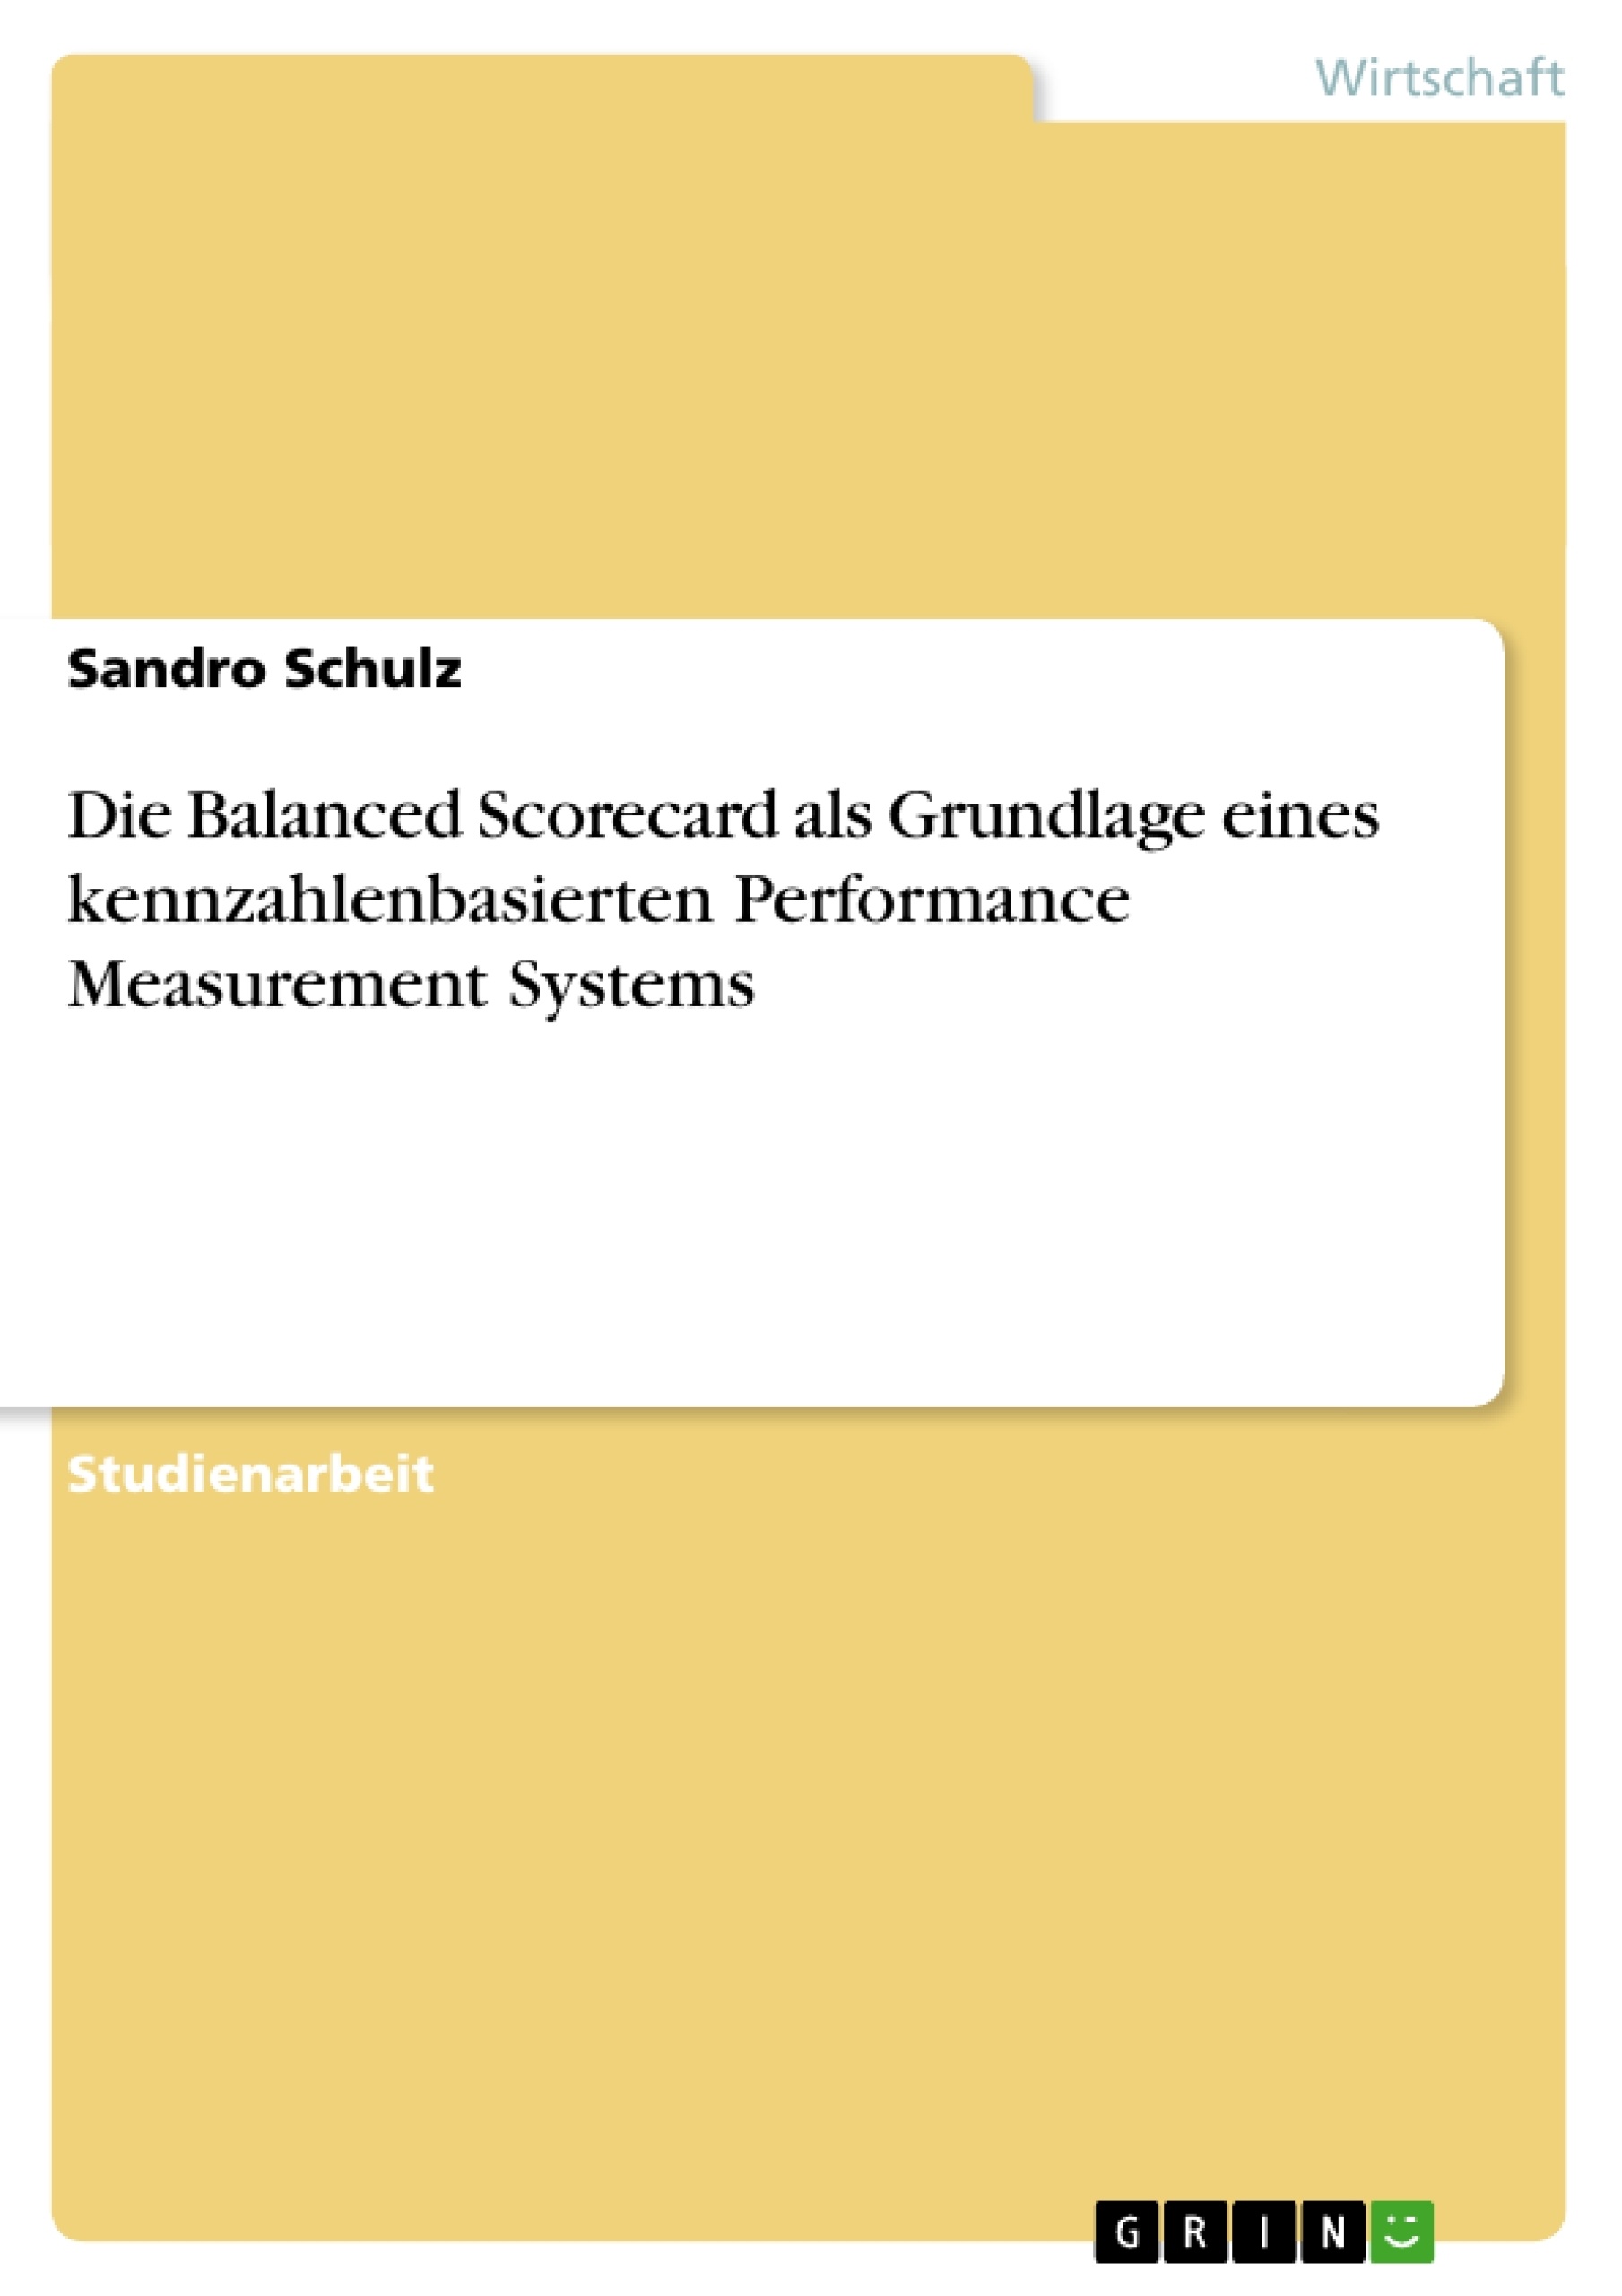 Titel: Die Balanced Scorecard als Grundlage eines kennzahlenbasierten Performance Measurement Systems